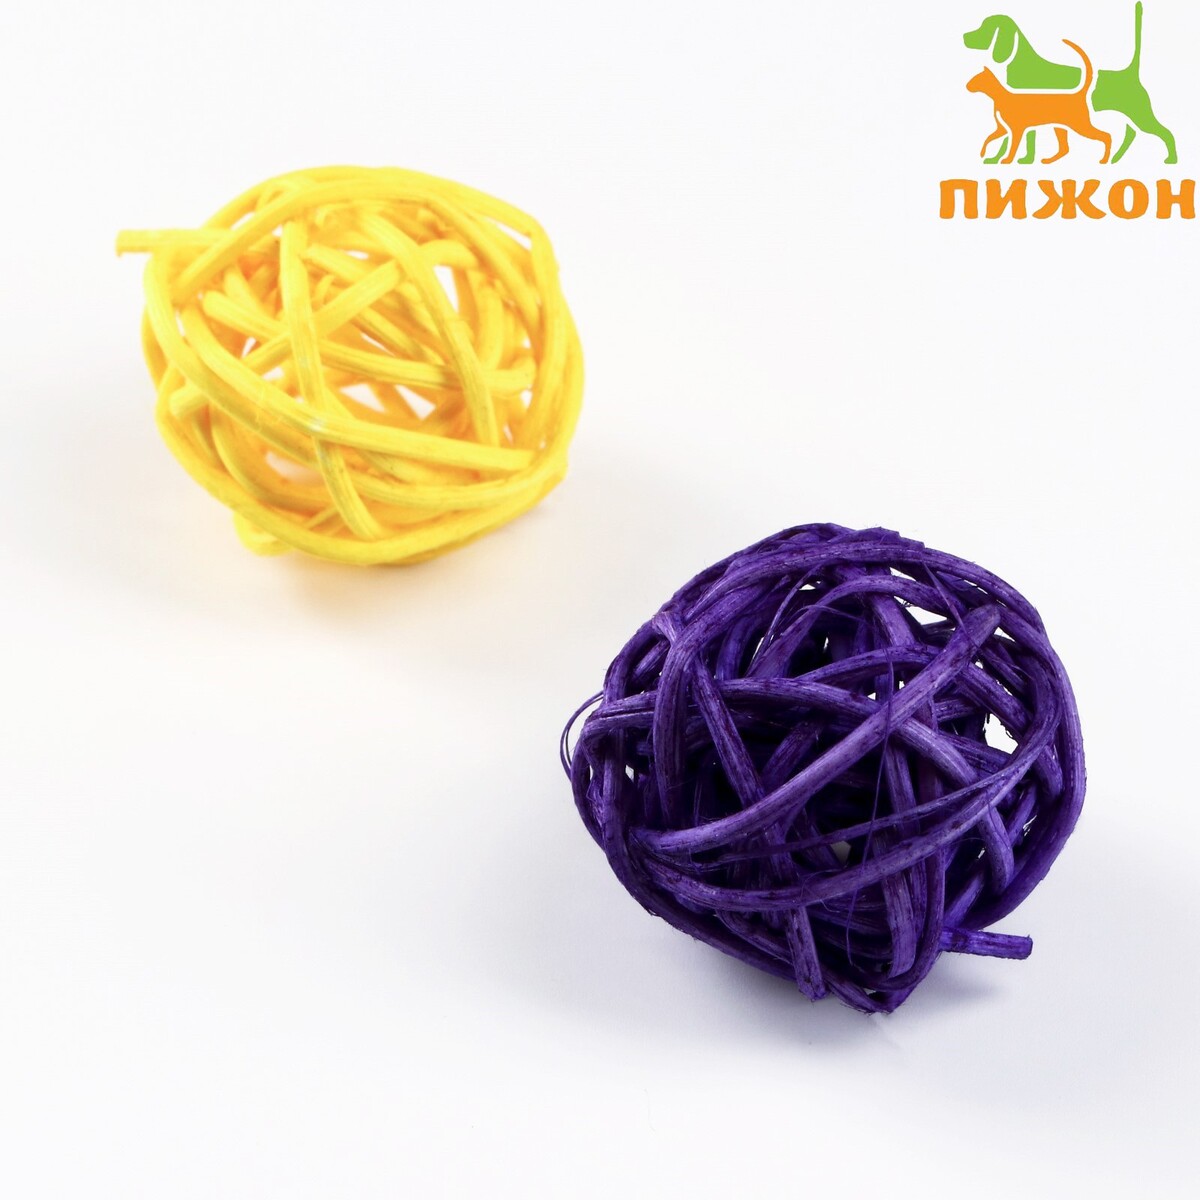 Набор из 2 плетеных шариков из лозы без бубенчиков, 3 см, фиолетовый/желтый набор плетеных корзин для хранения ручной работы ladо́m